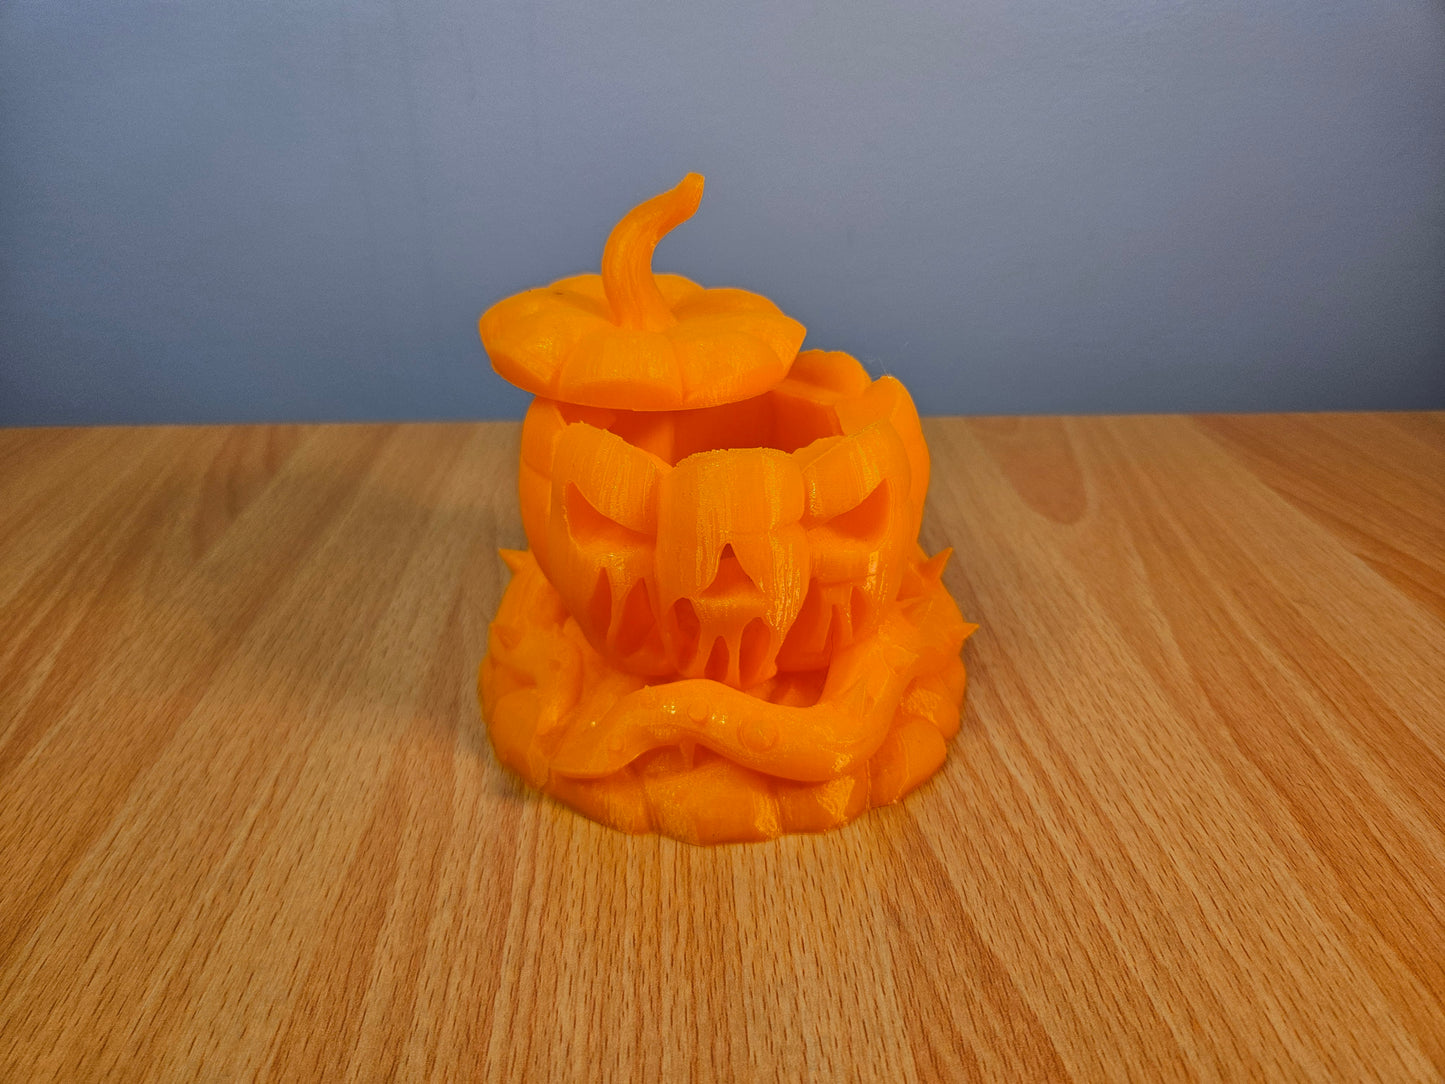 Mythic Pumpkin Dice Box by Mythic Roll